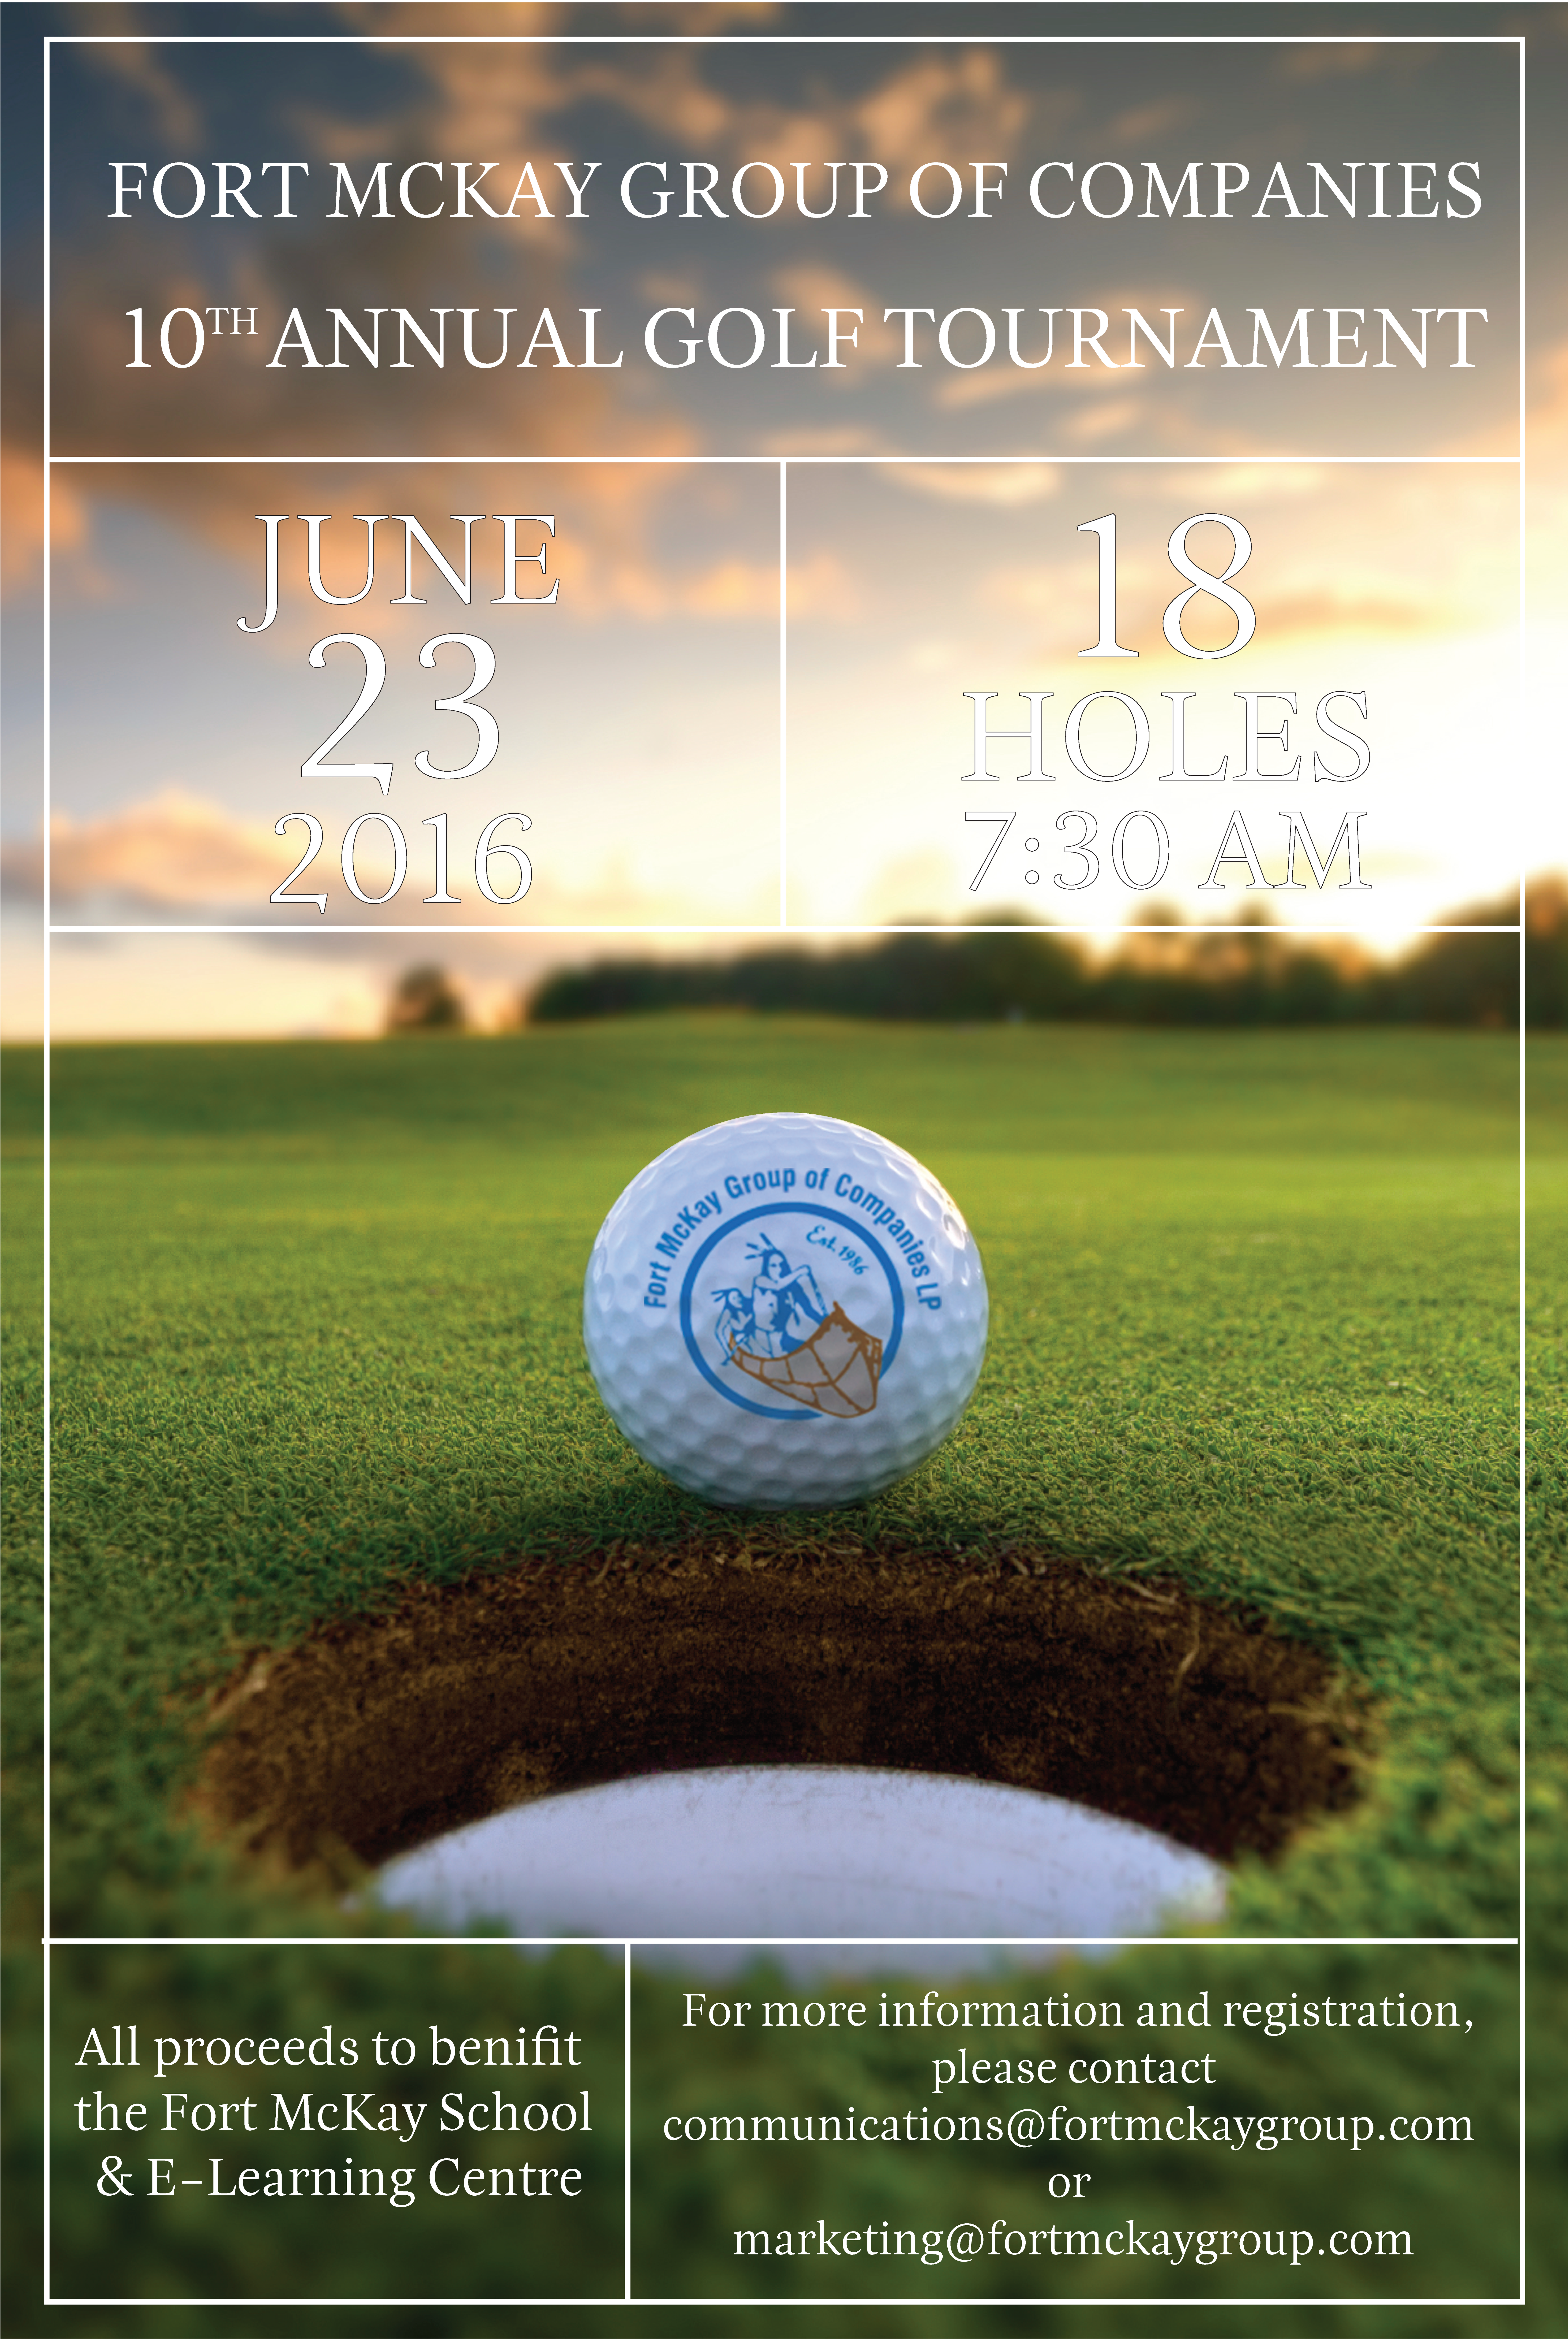 FMGOC_Golf Tournament_Poster